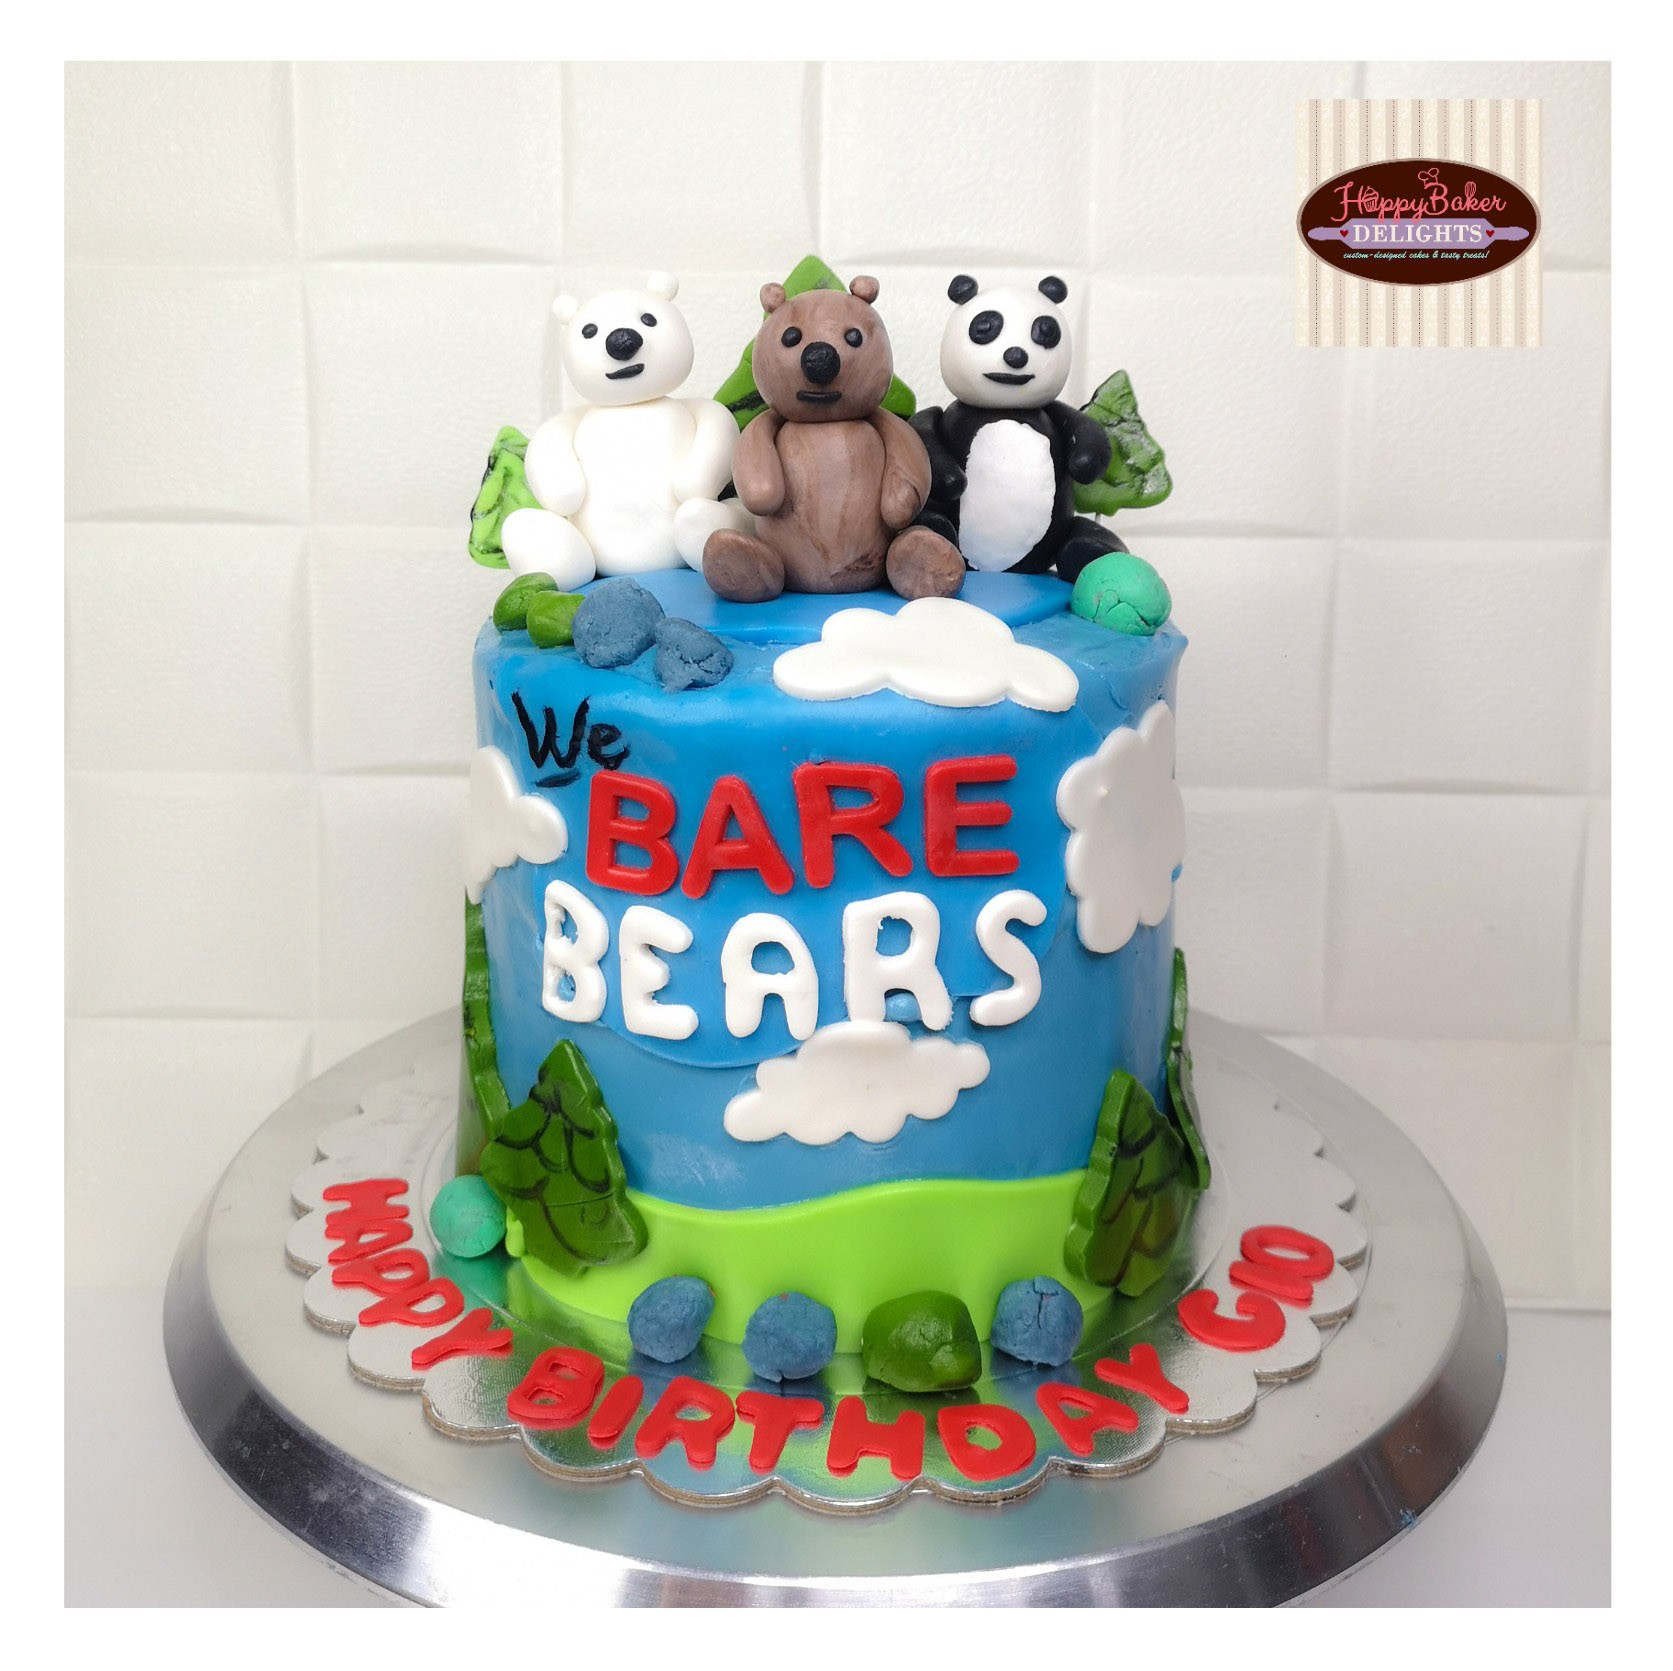 Happy Baker Delights on Twitter: "We Bare Bears Cake https://t.co/m1wmmnGG7Z https://t.co/aJ0pIFrPJg" / Twitter